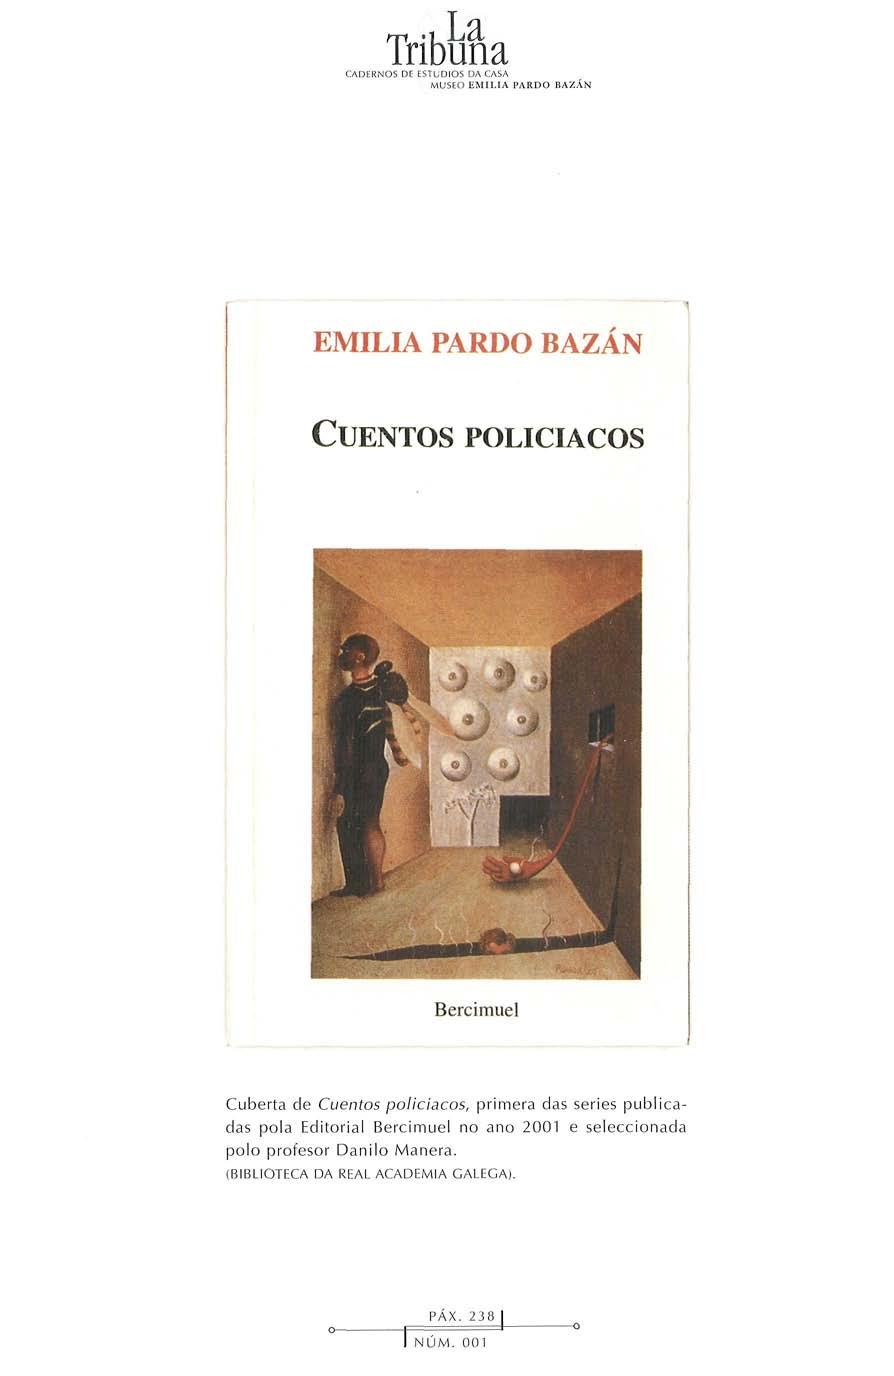 EMILIA PARDO BAZAN CUENTOS POLICIACOS Cuberta de Cuentos policiacos, primera das series